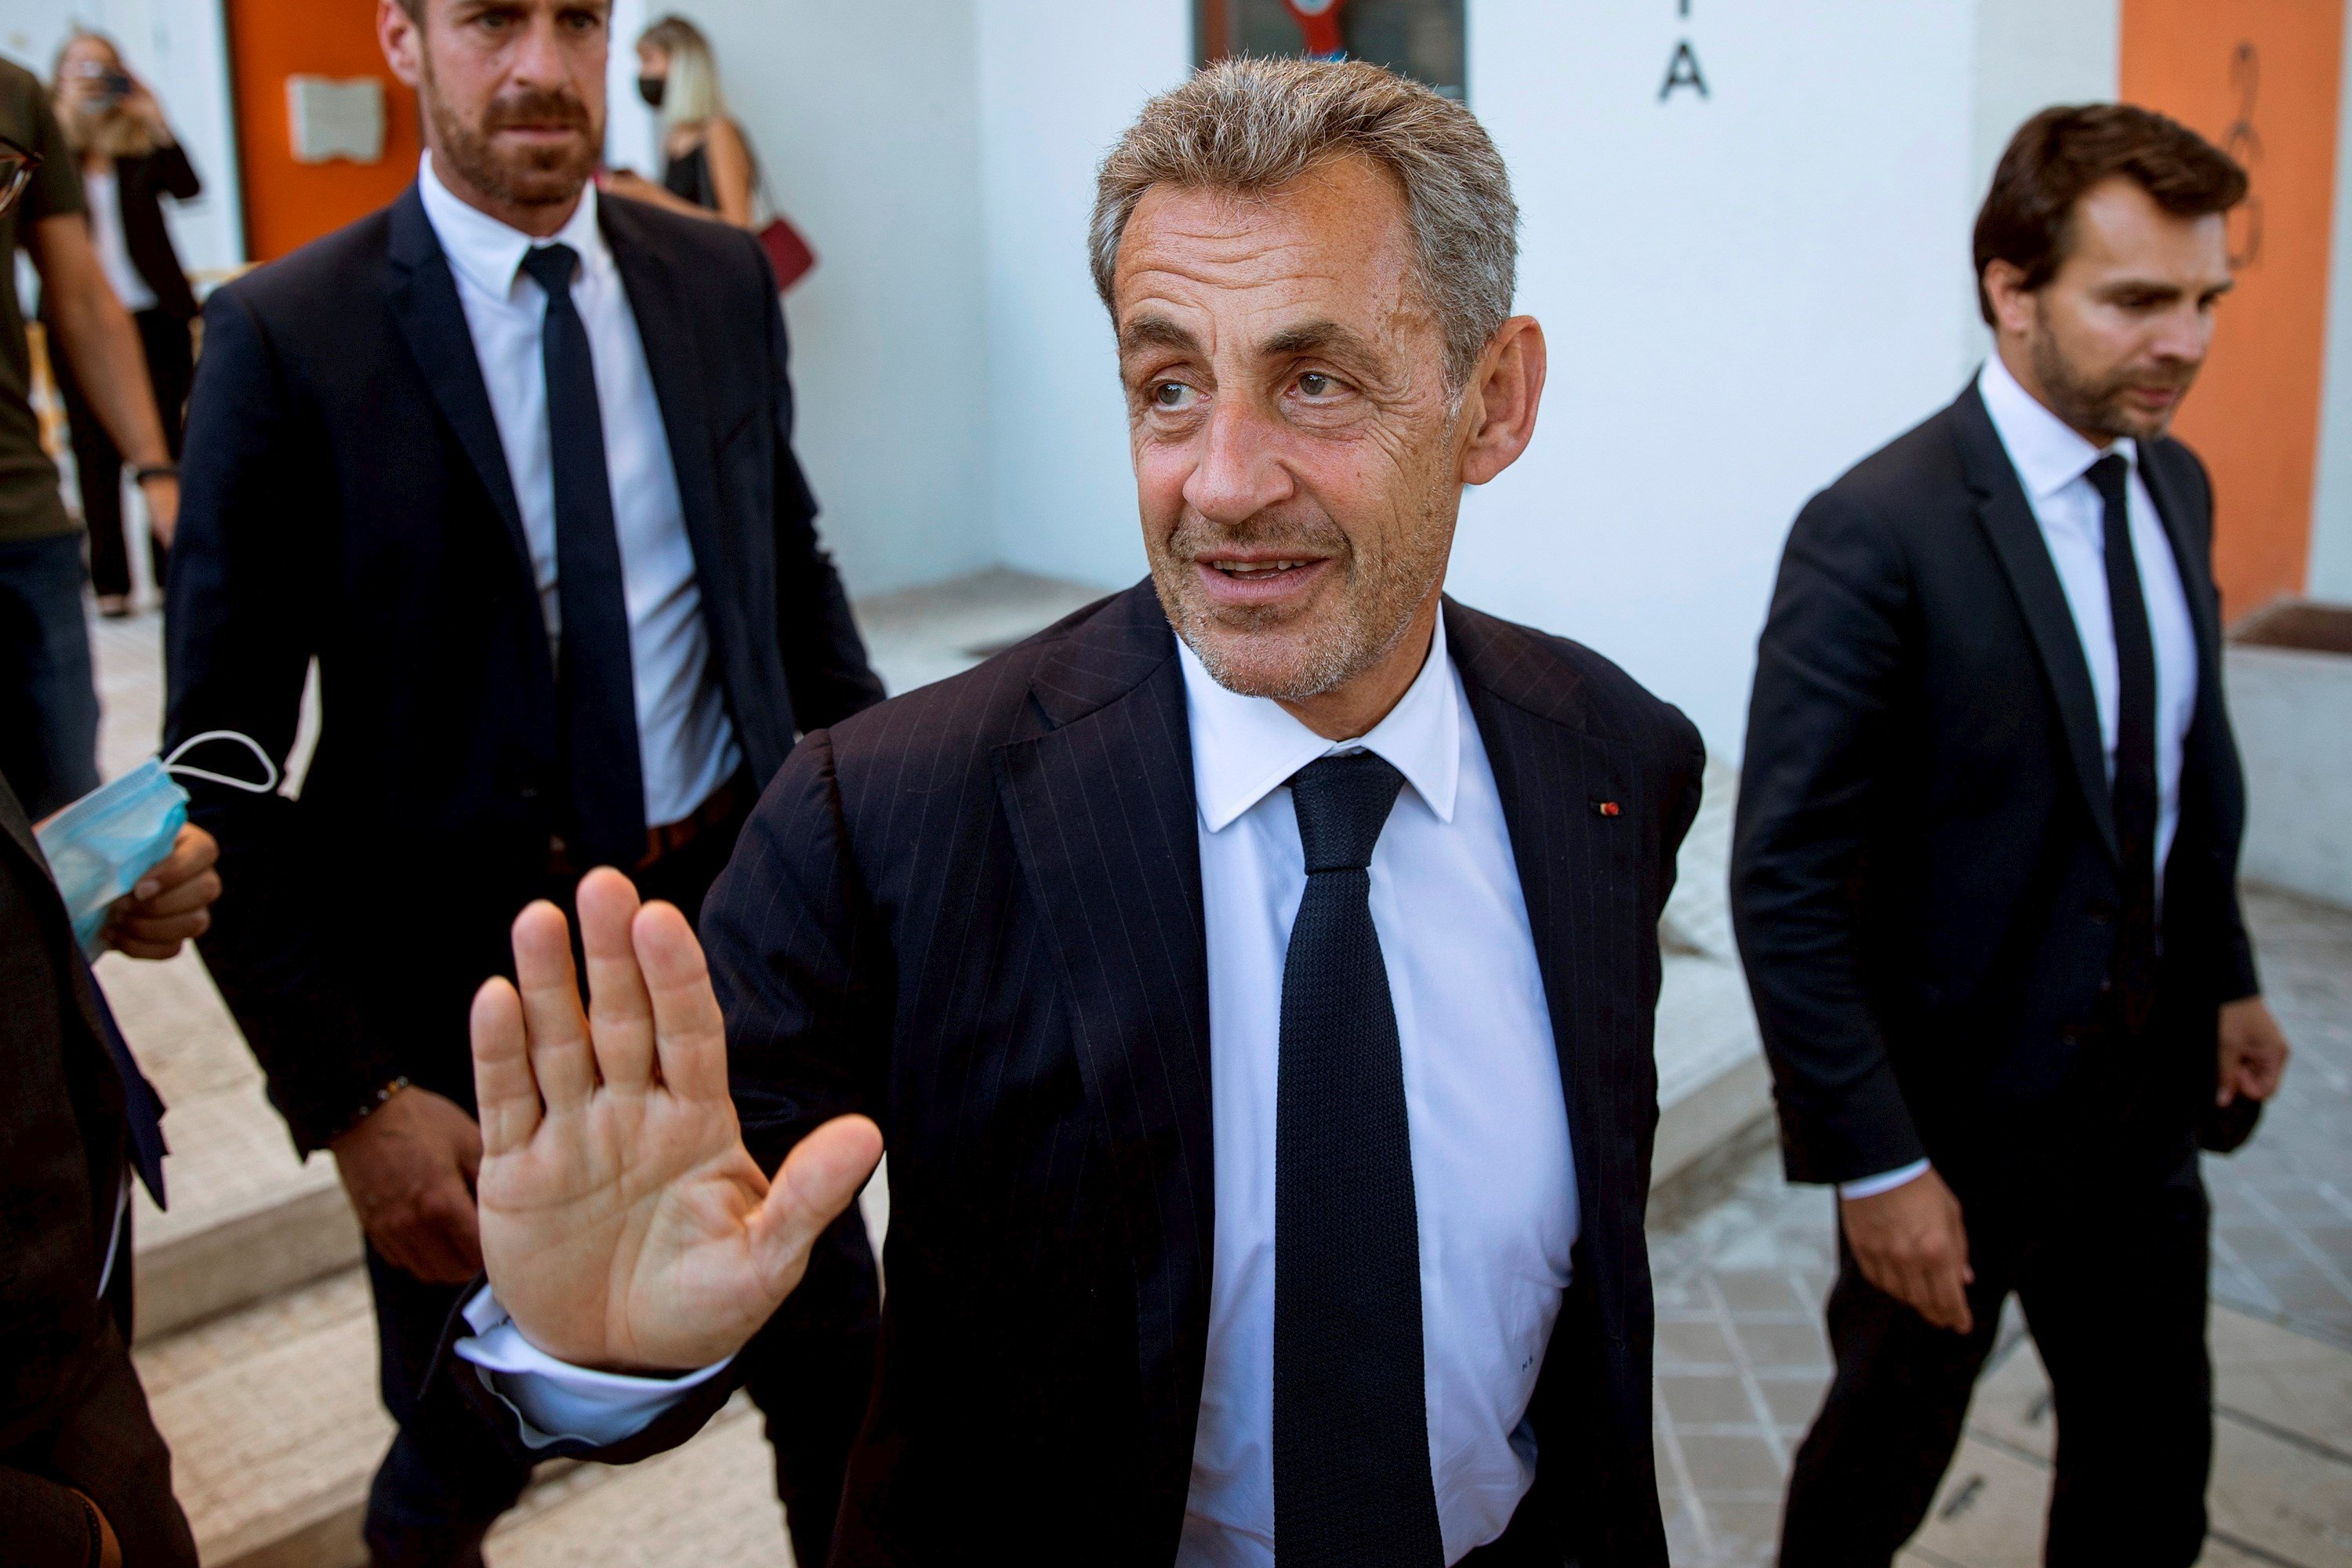 Tornen a condemnar Sarkozy, "un exemple a seguir", segons Casado